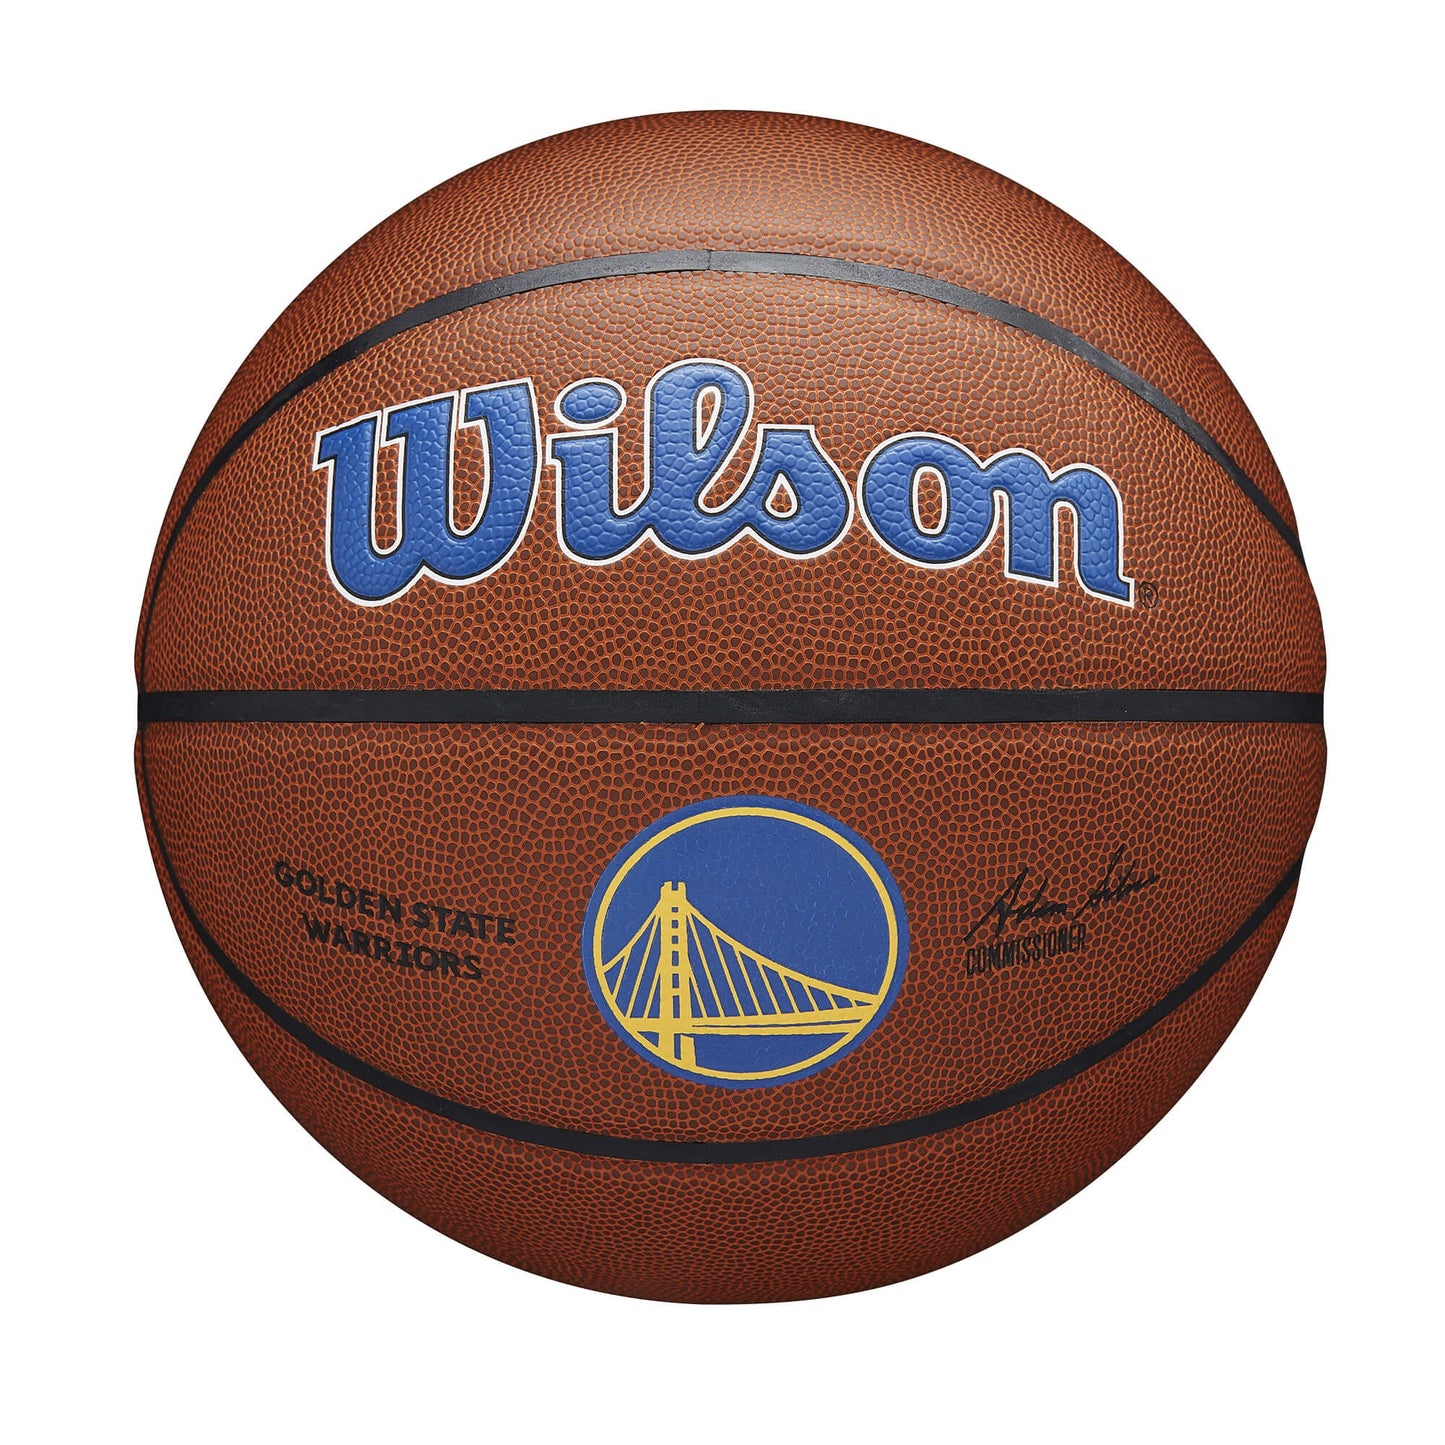 Wilson NBA Team Alliance Composite Basketball Golden State Warriors (sz. 7)